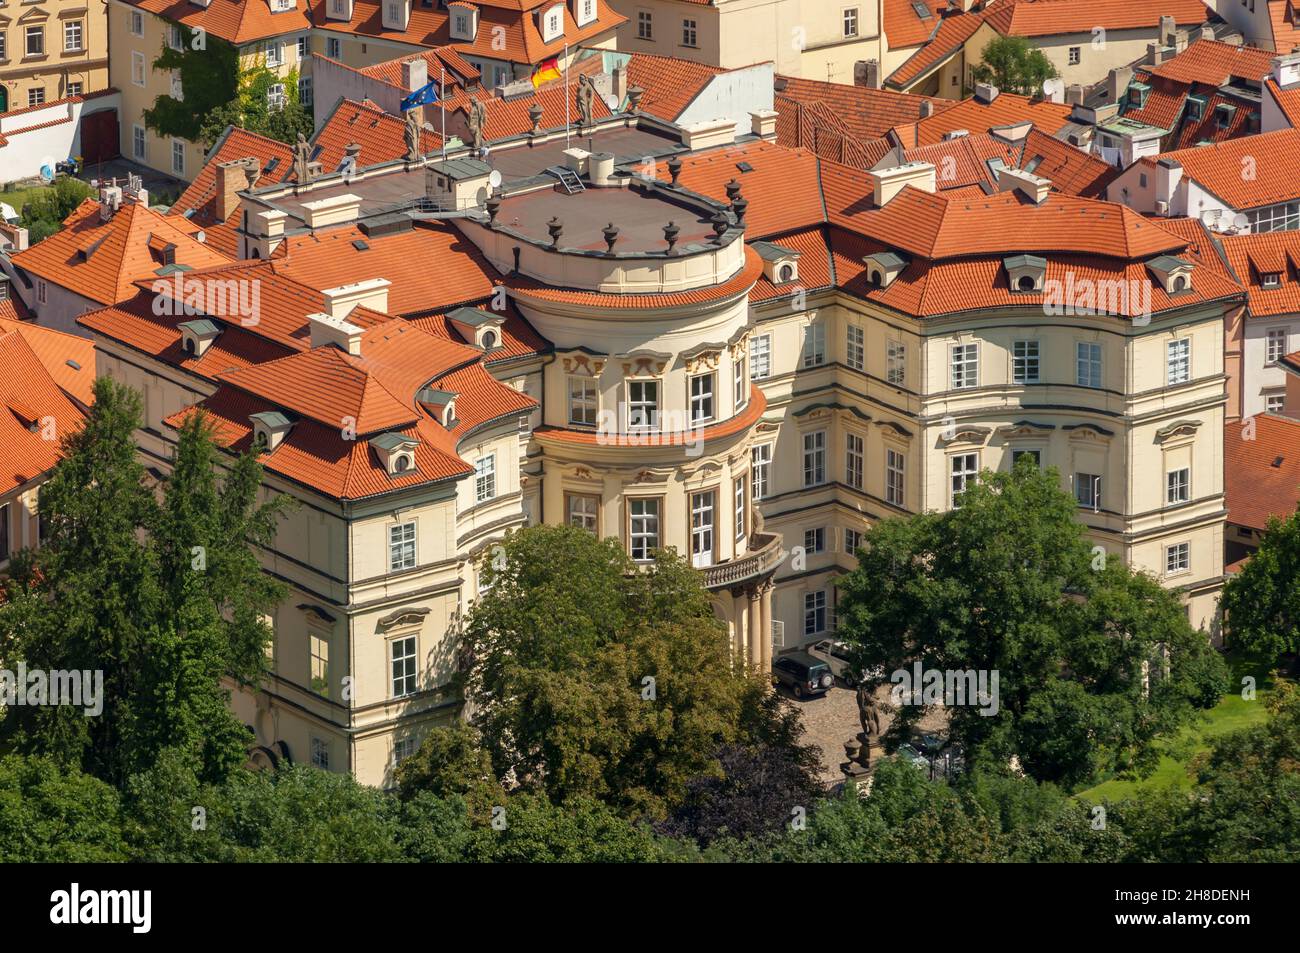 El Barroco 1707 Palais Lobkowicz alberga la Embajada Alemana en Malá Strana de Praga con su techo de cerámica de terracota, ventanas de dormitorios y jardín Foto de stock